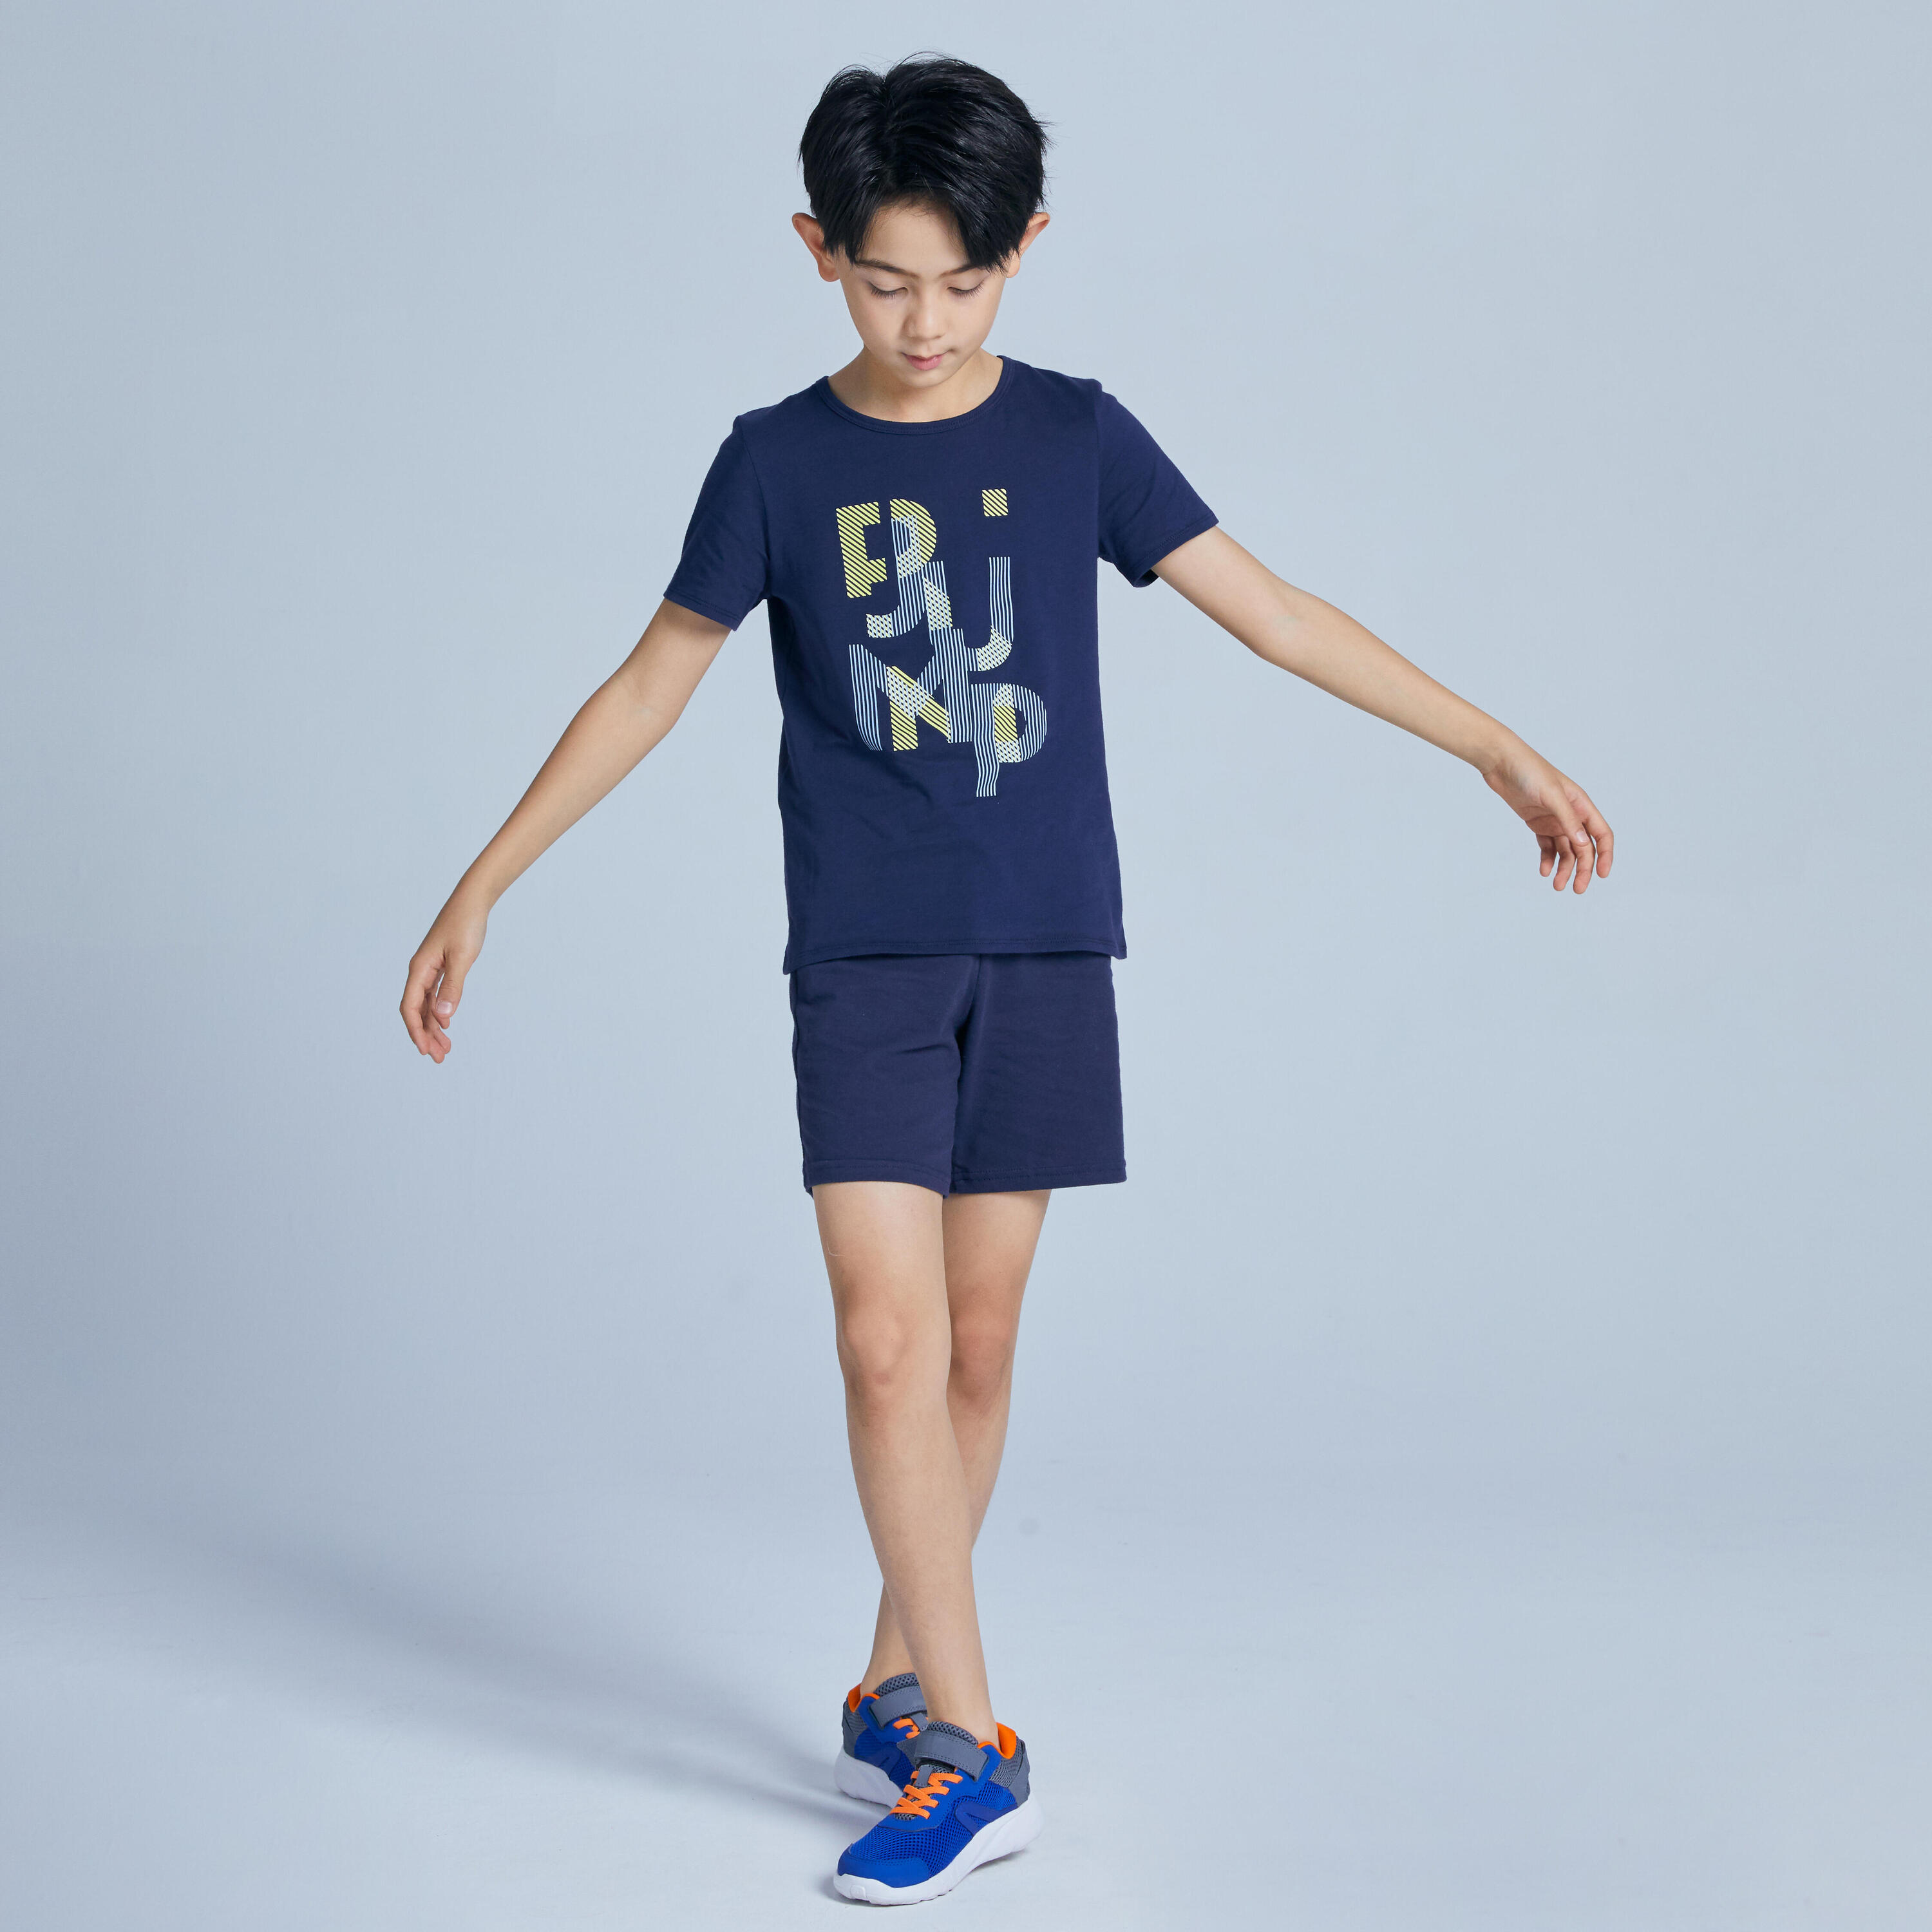 Kids' Basic T-Shirt - Navy Blue Print 2/3